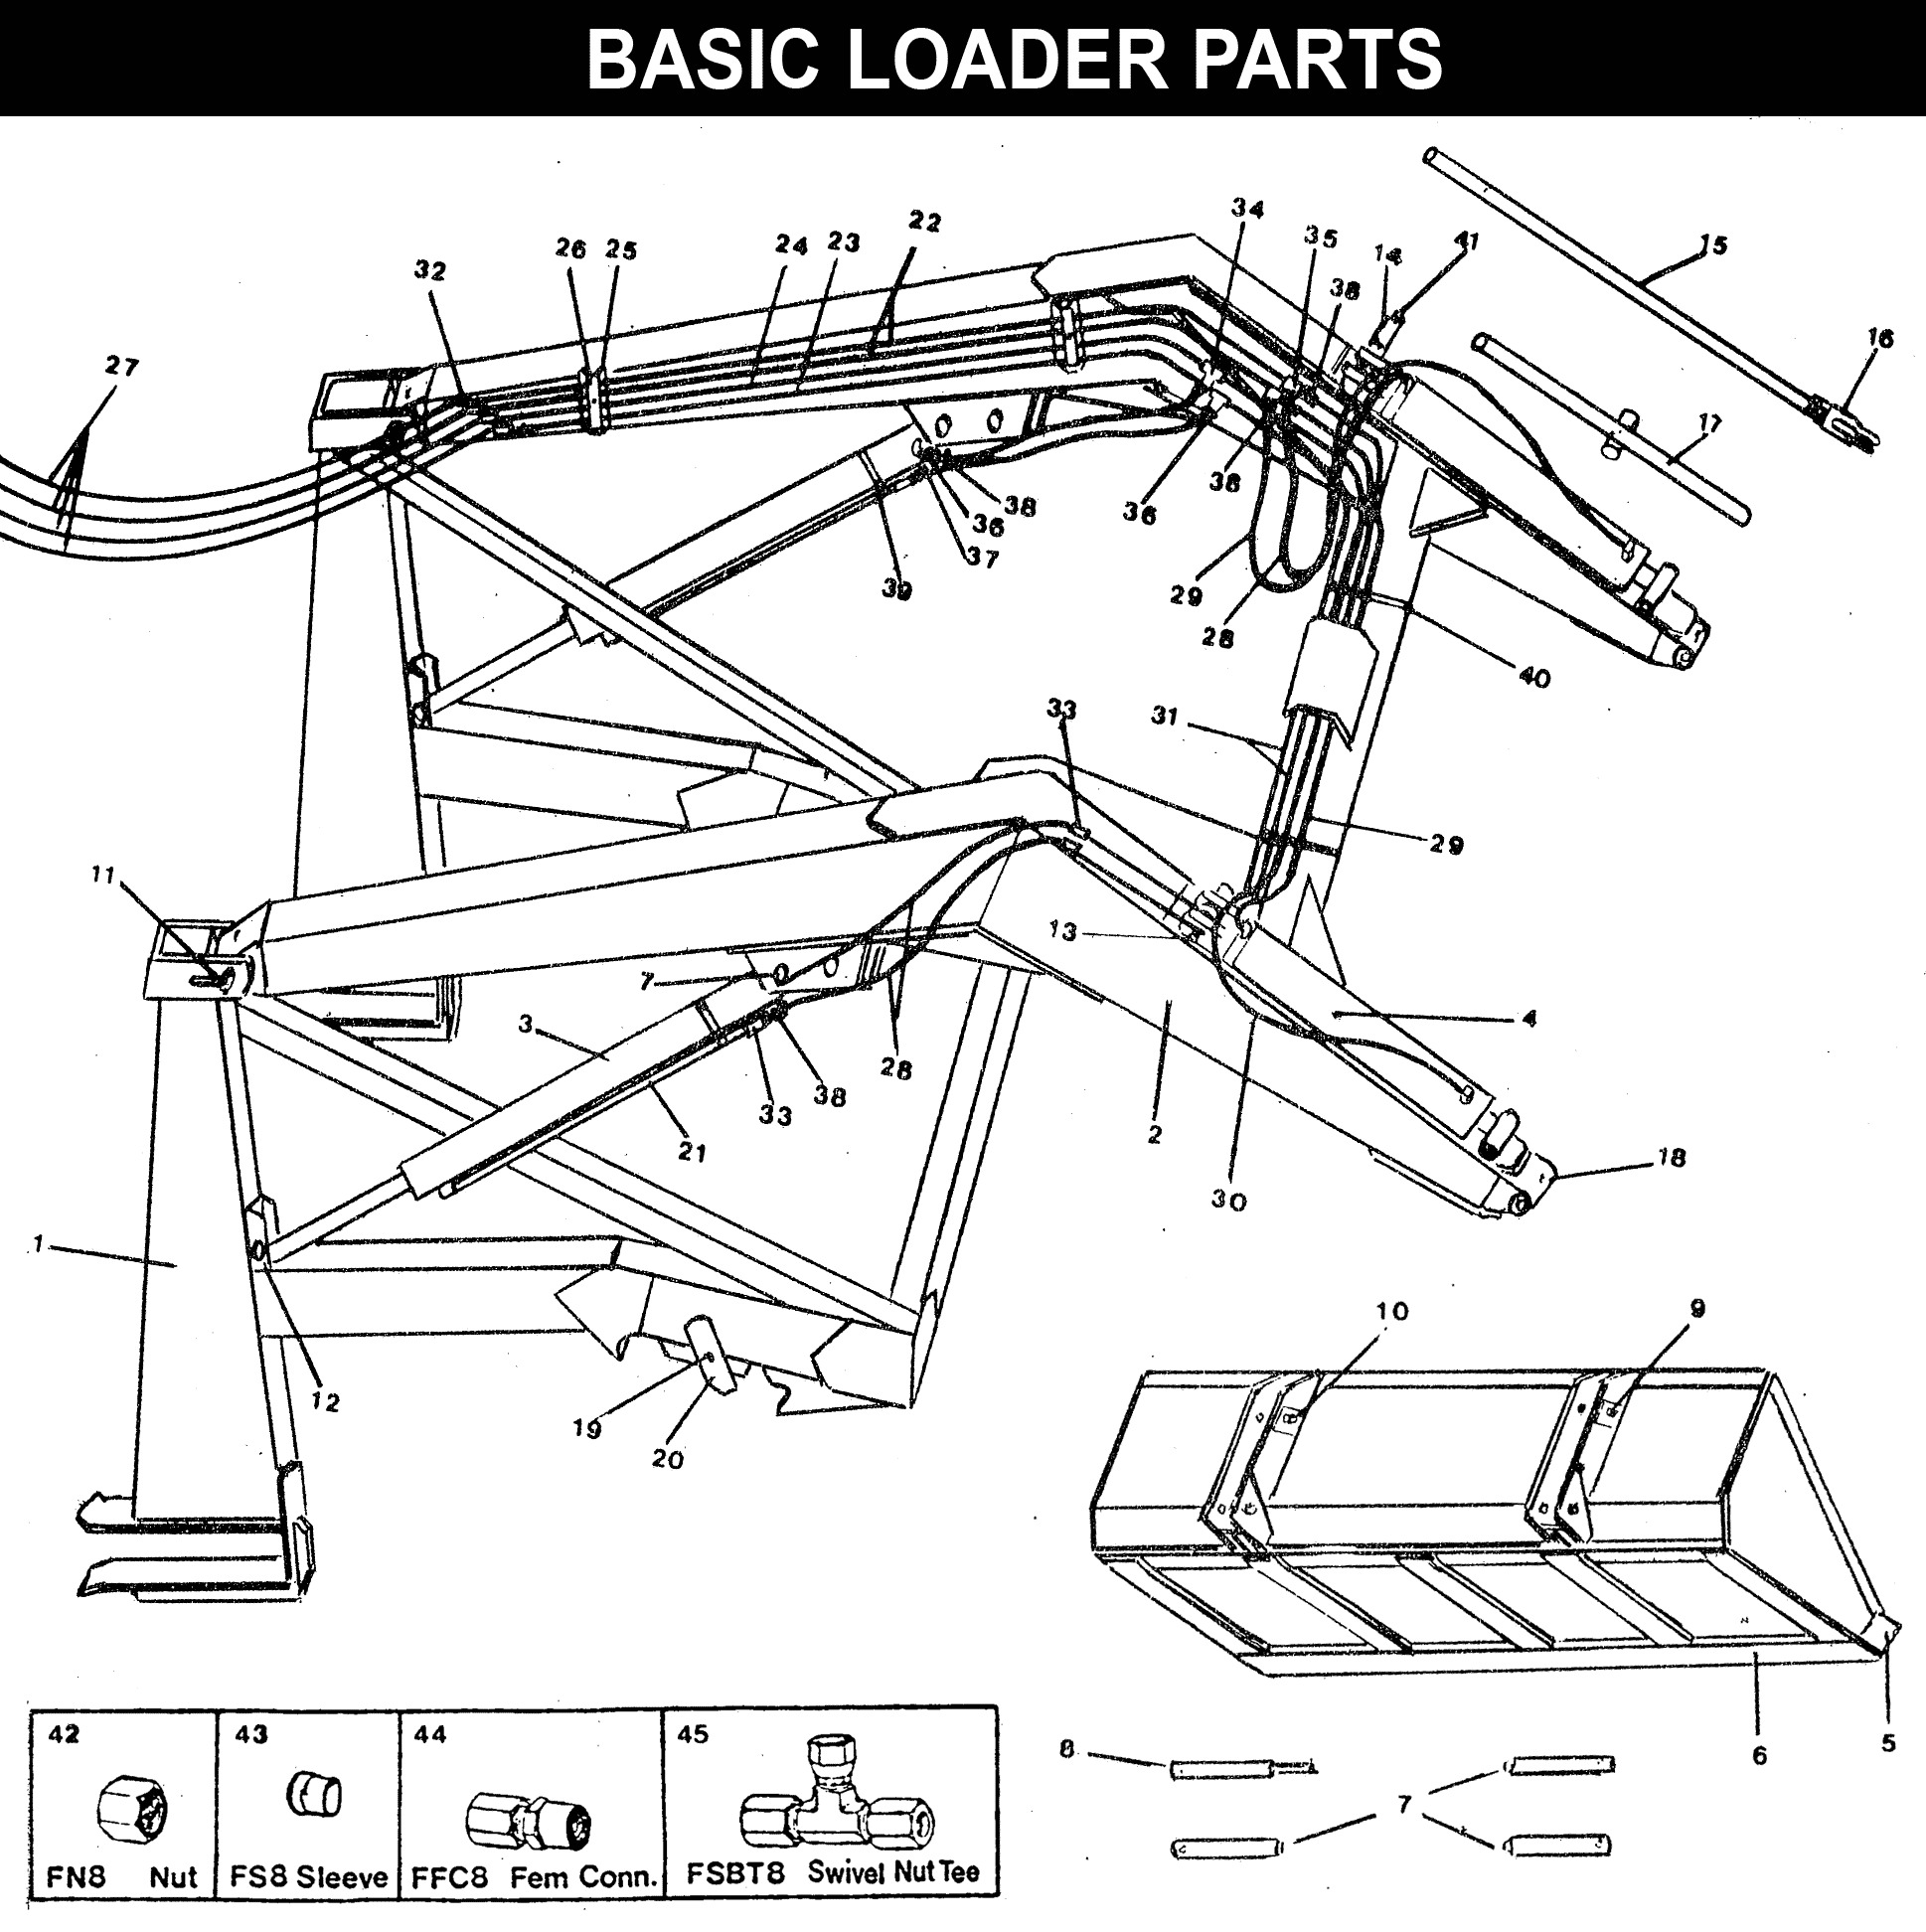 WL-60 Basic Loader Parts